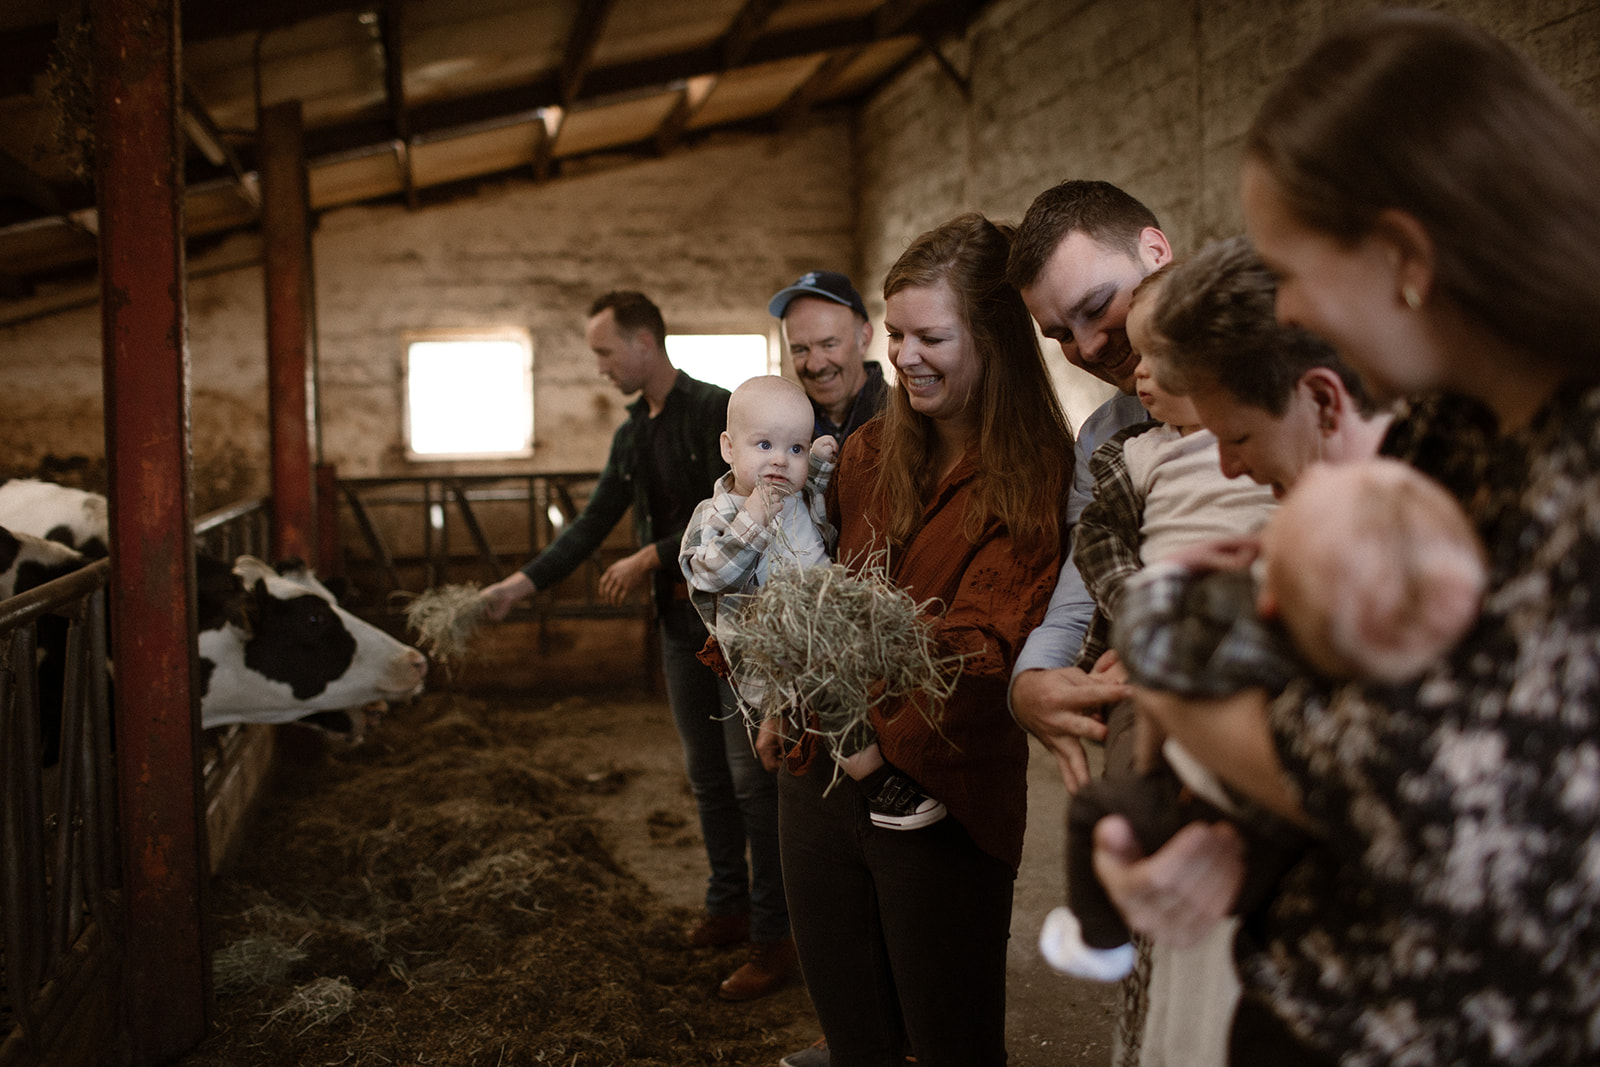 familie fotoshoot, een afscheid van hun familiebedrijf, tussen de koeien. Zuid-Limburg, Nederland